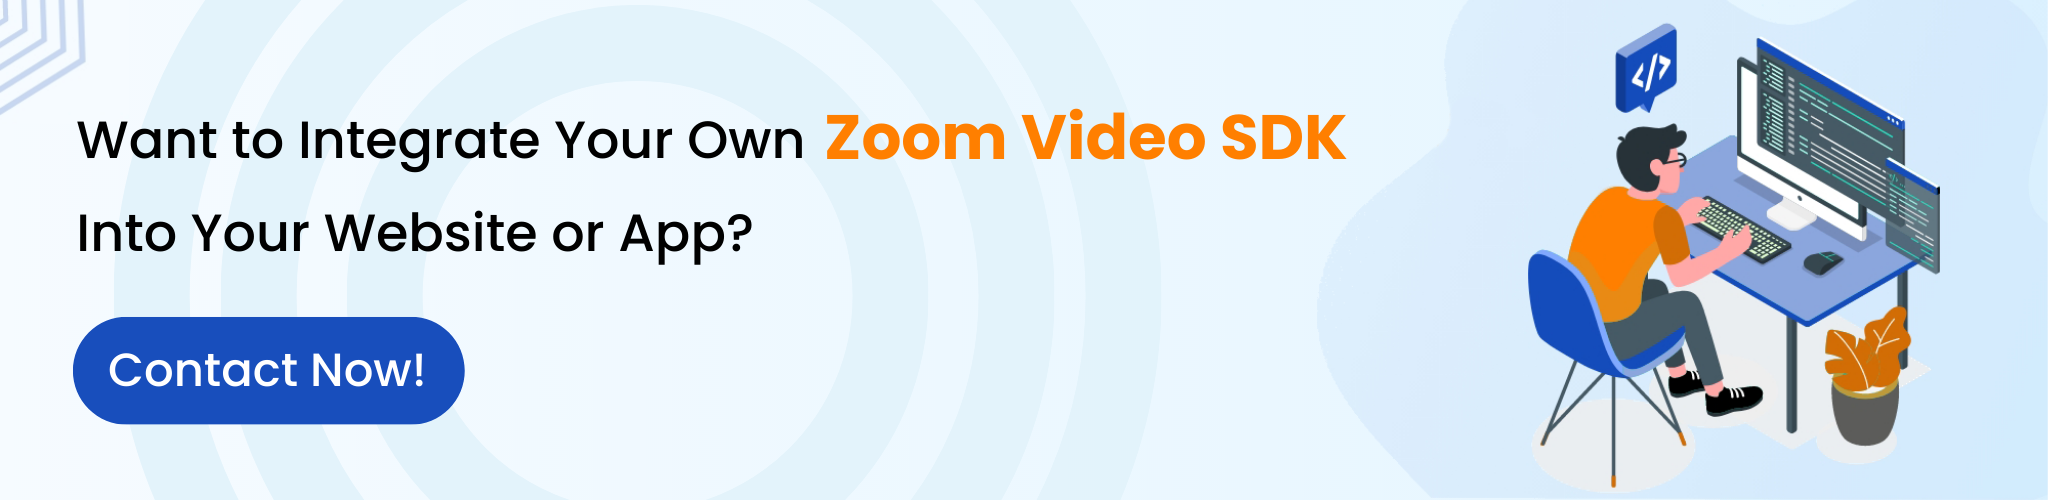 Zoom Video SDK